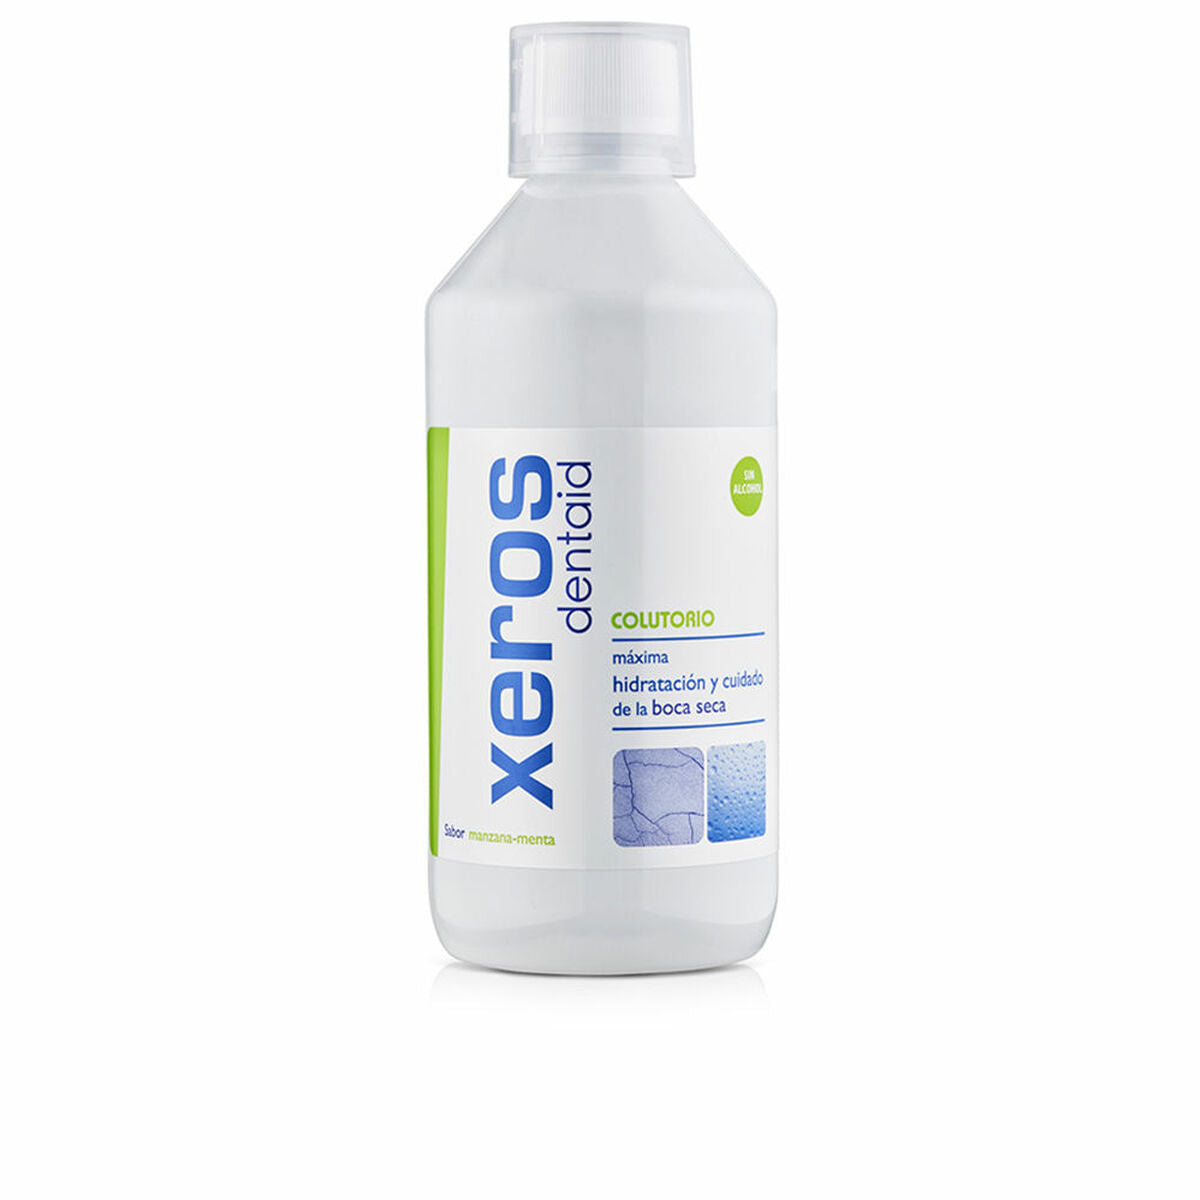 Mundwasser Xeros dentaid 500 ml